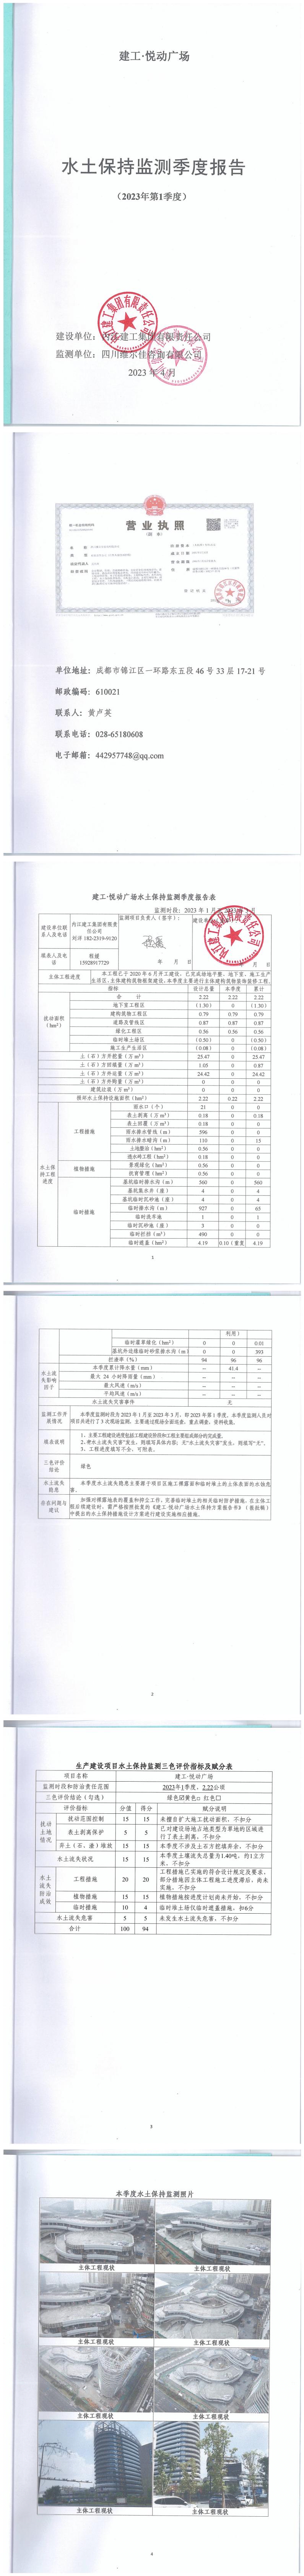 建工·悅動廣場2023年1季度水土保持監測季報_00.jpg